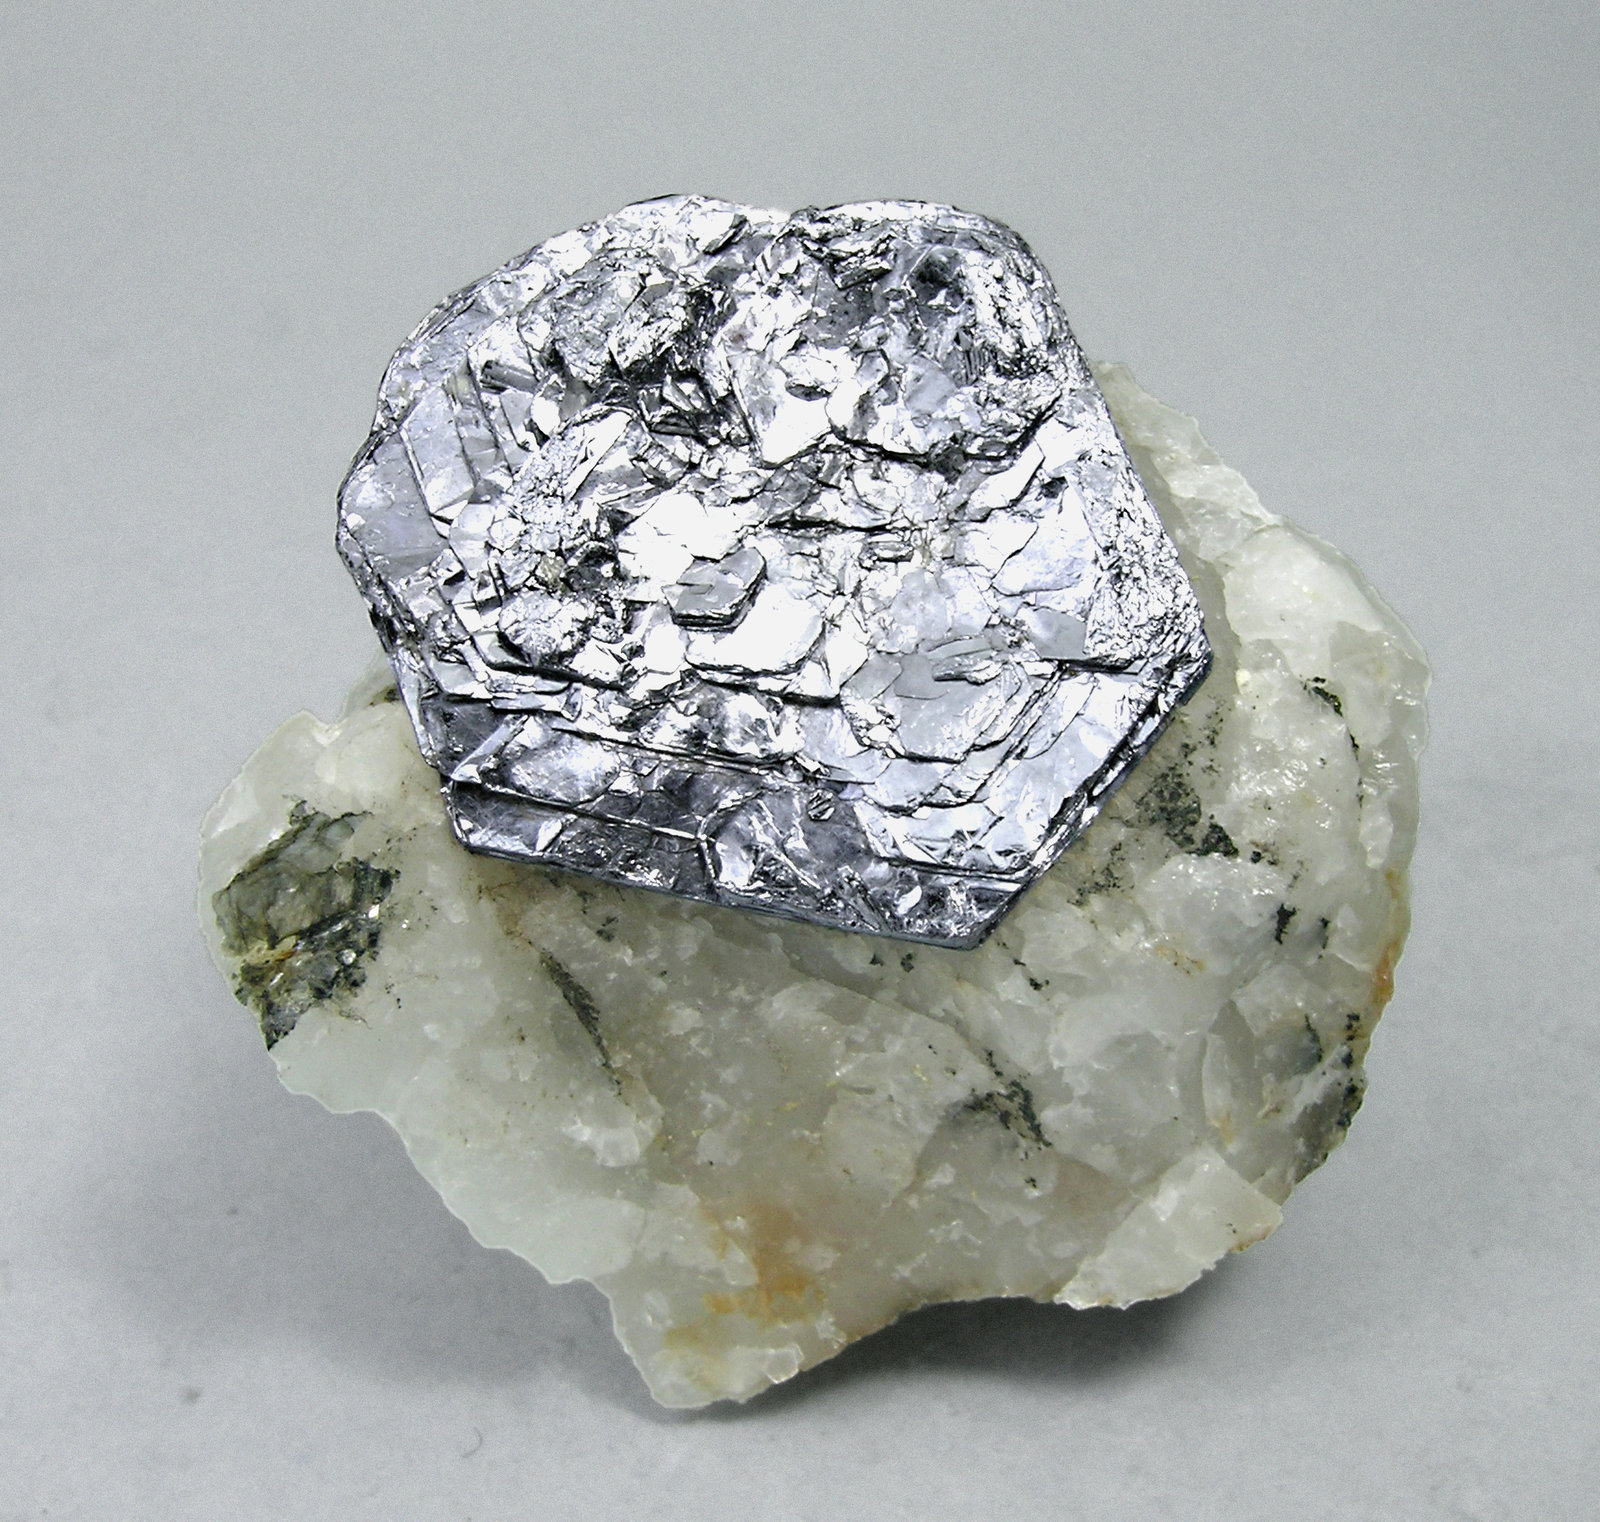 specimens/s_imagesM6/Molibdenite-AG46M6.jpg